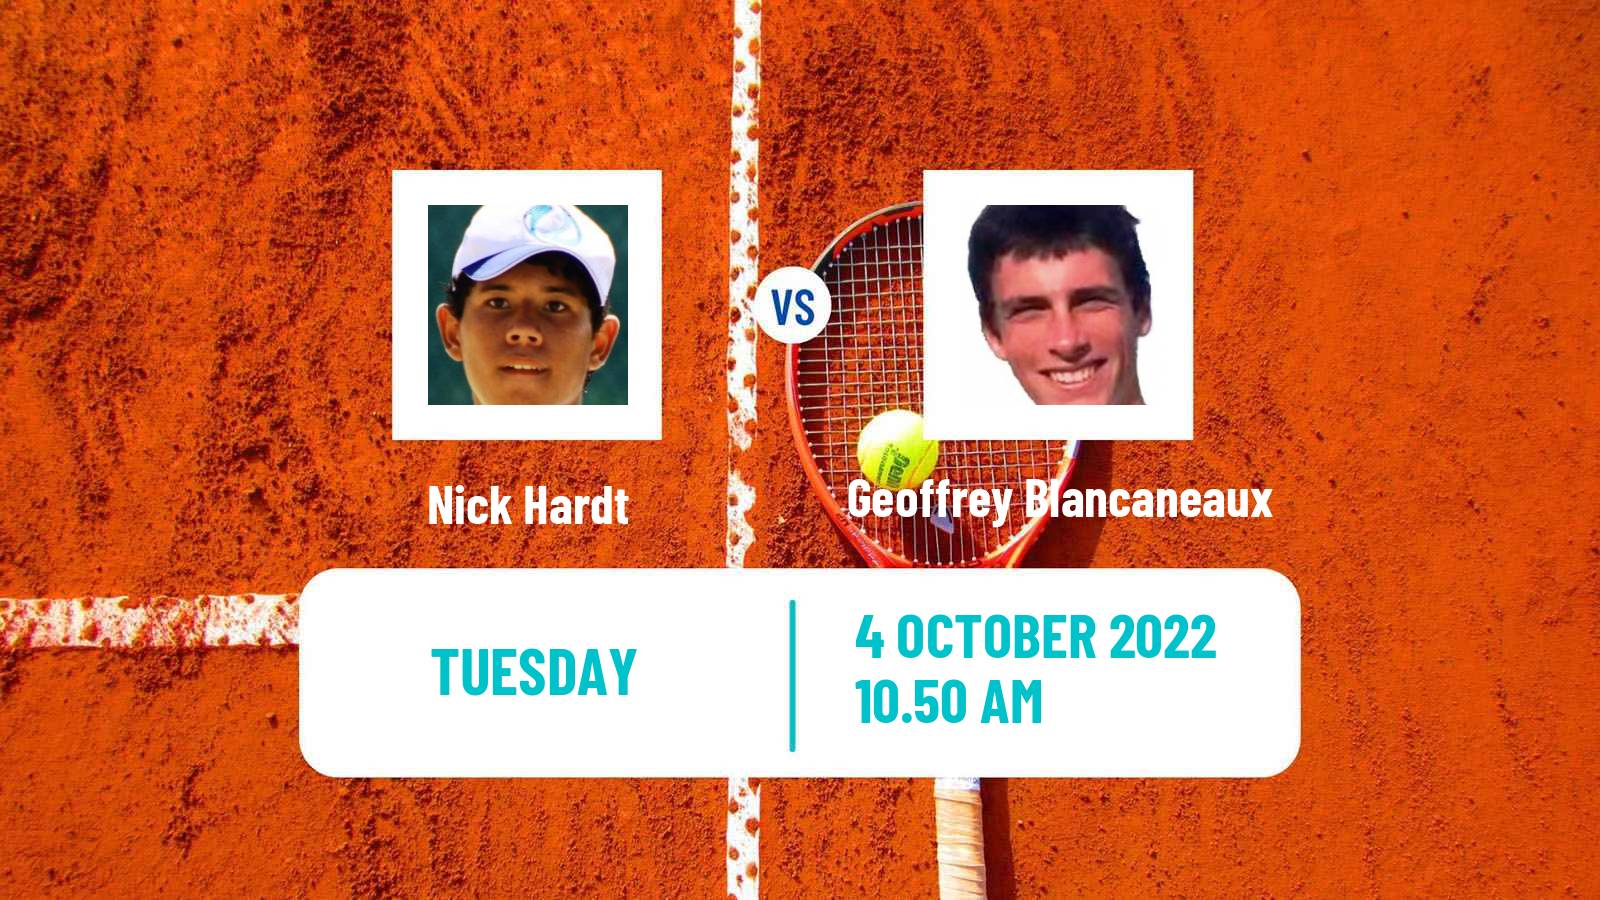 Tennis ATP Challenger Nick Hardt - Geoffrey Blancaneaux